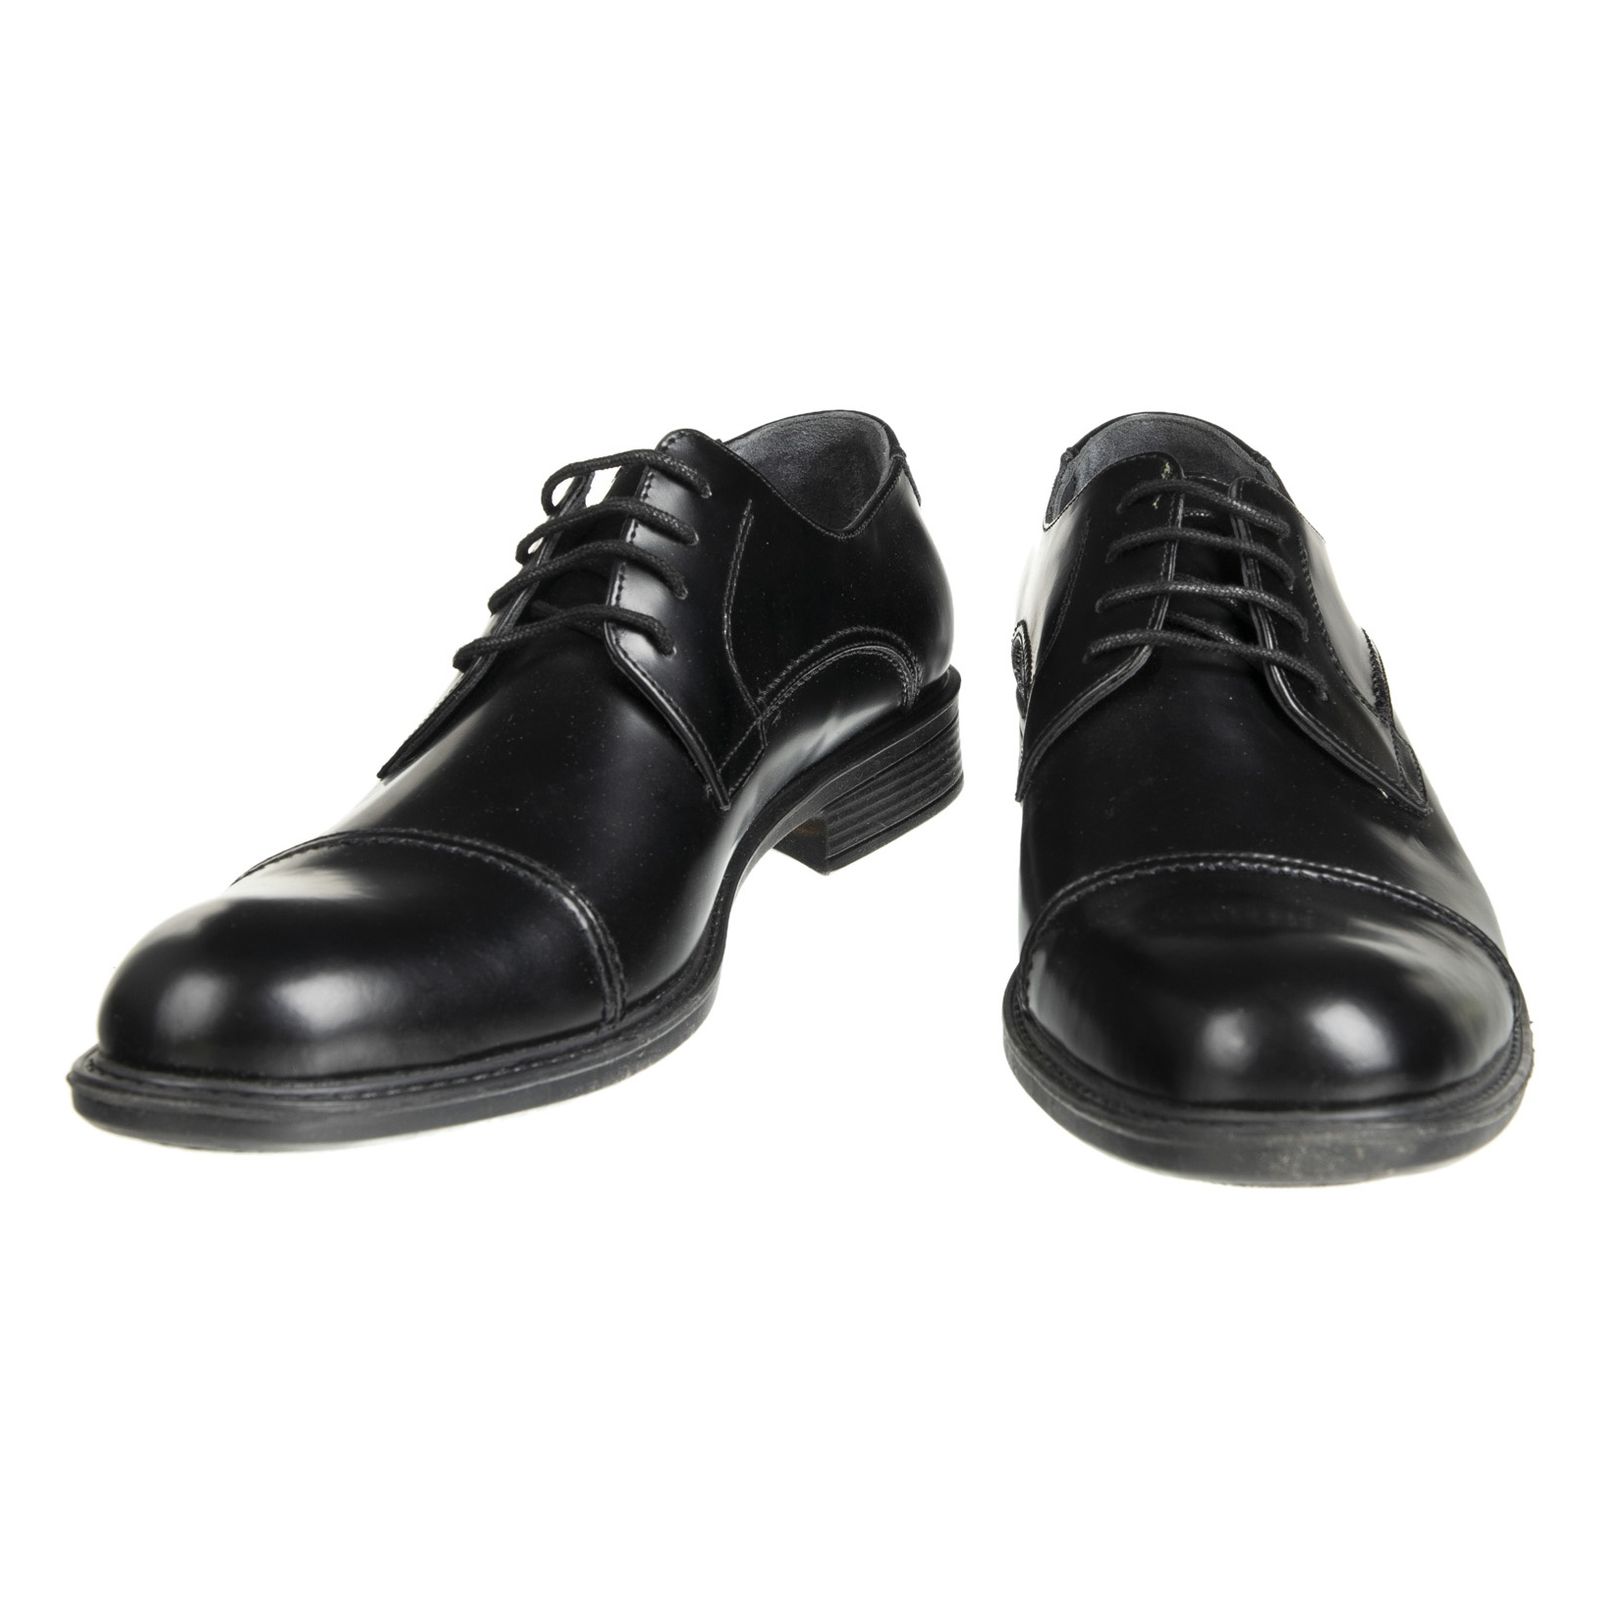 کفش مردانه دلفارد مدل 7219k503-101 - مشکی - 4